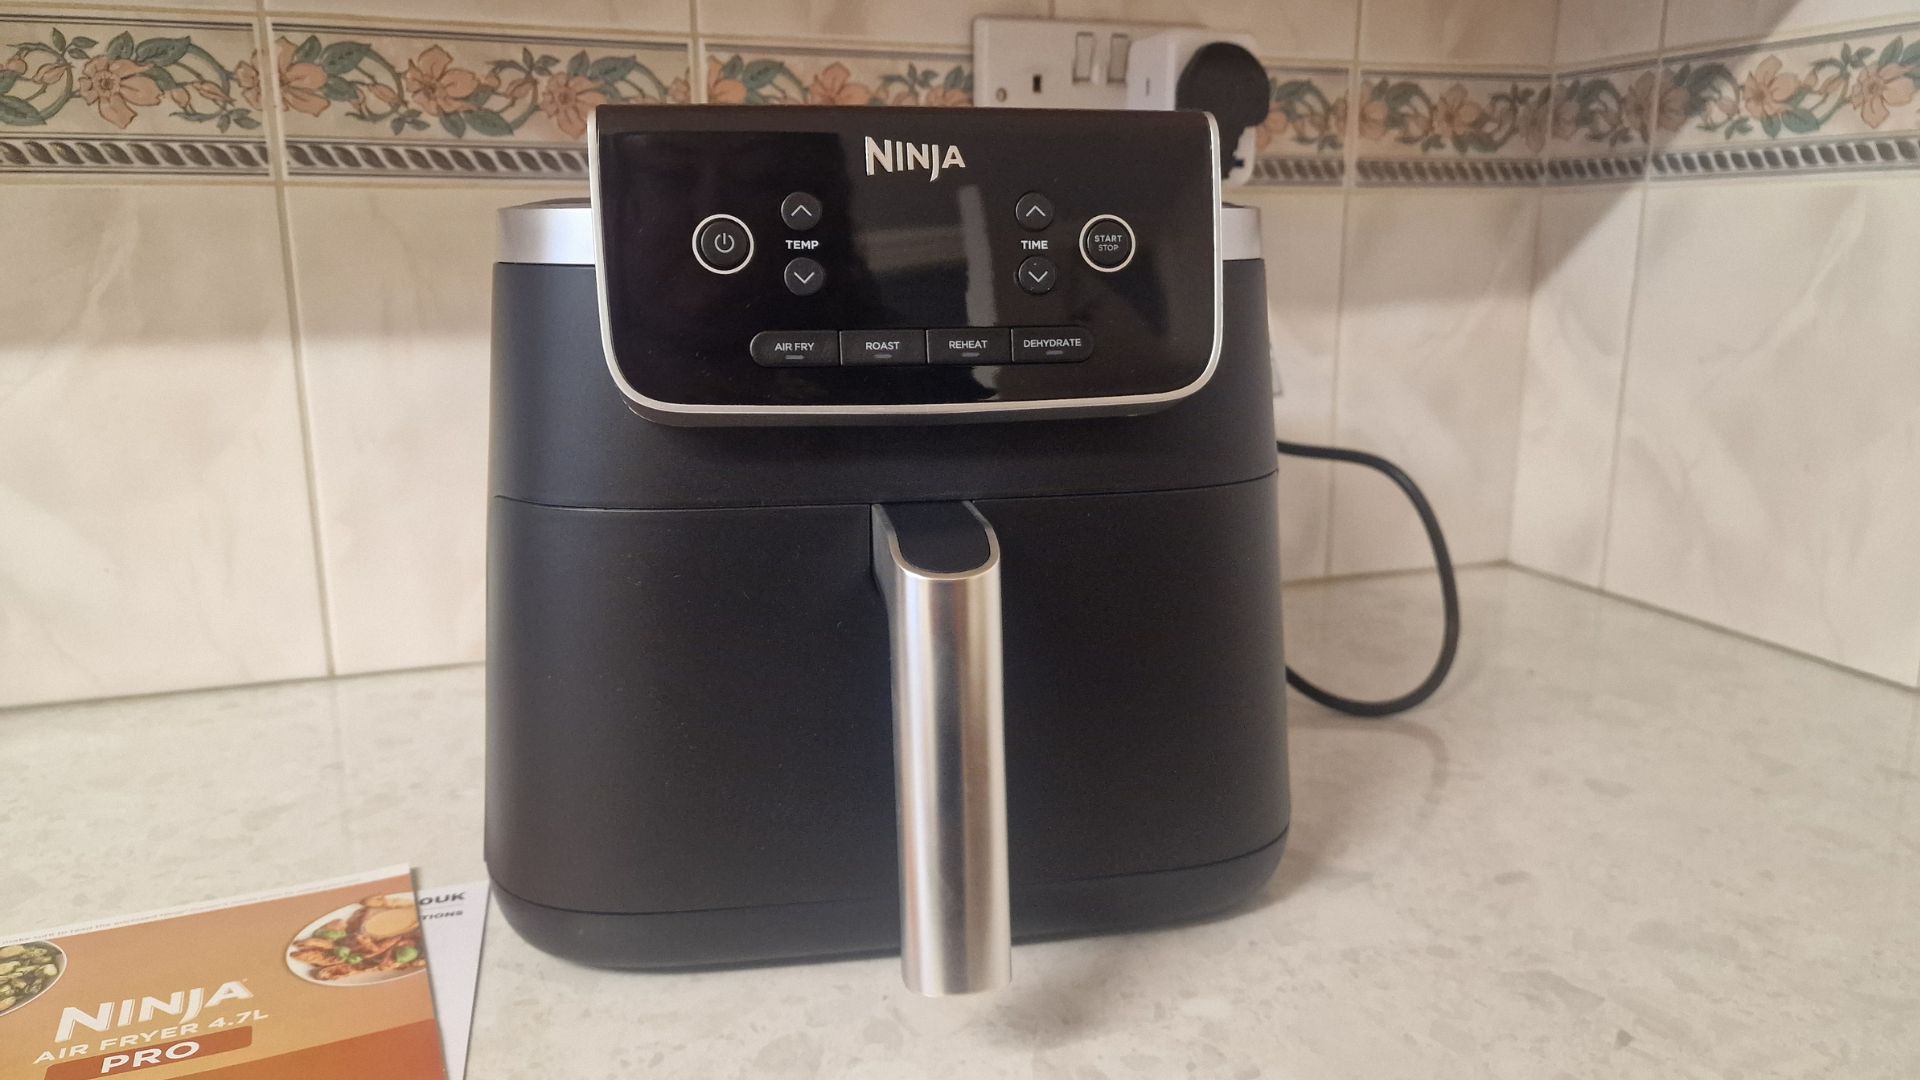 Ninja Air Fryer Pro 4'ü 1 arada mutfak tezgahında kullanıma hazır